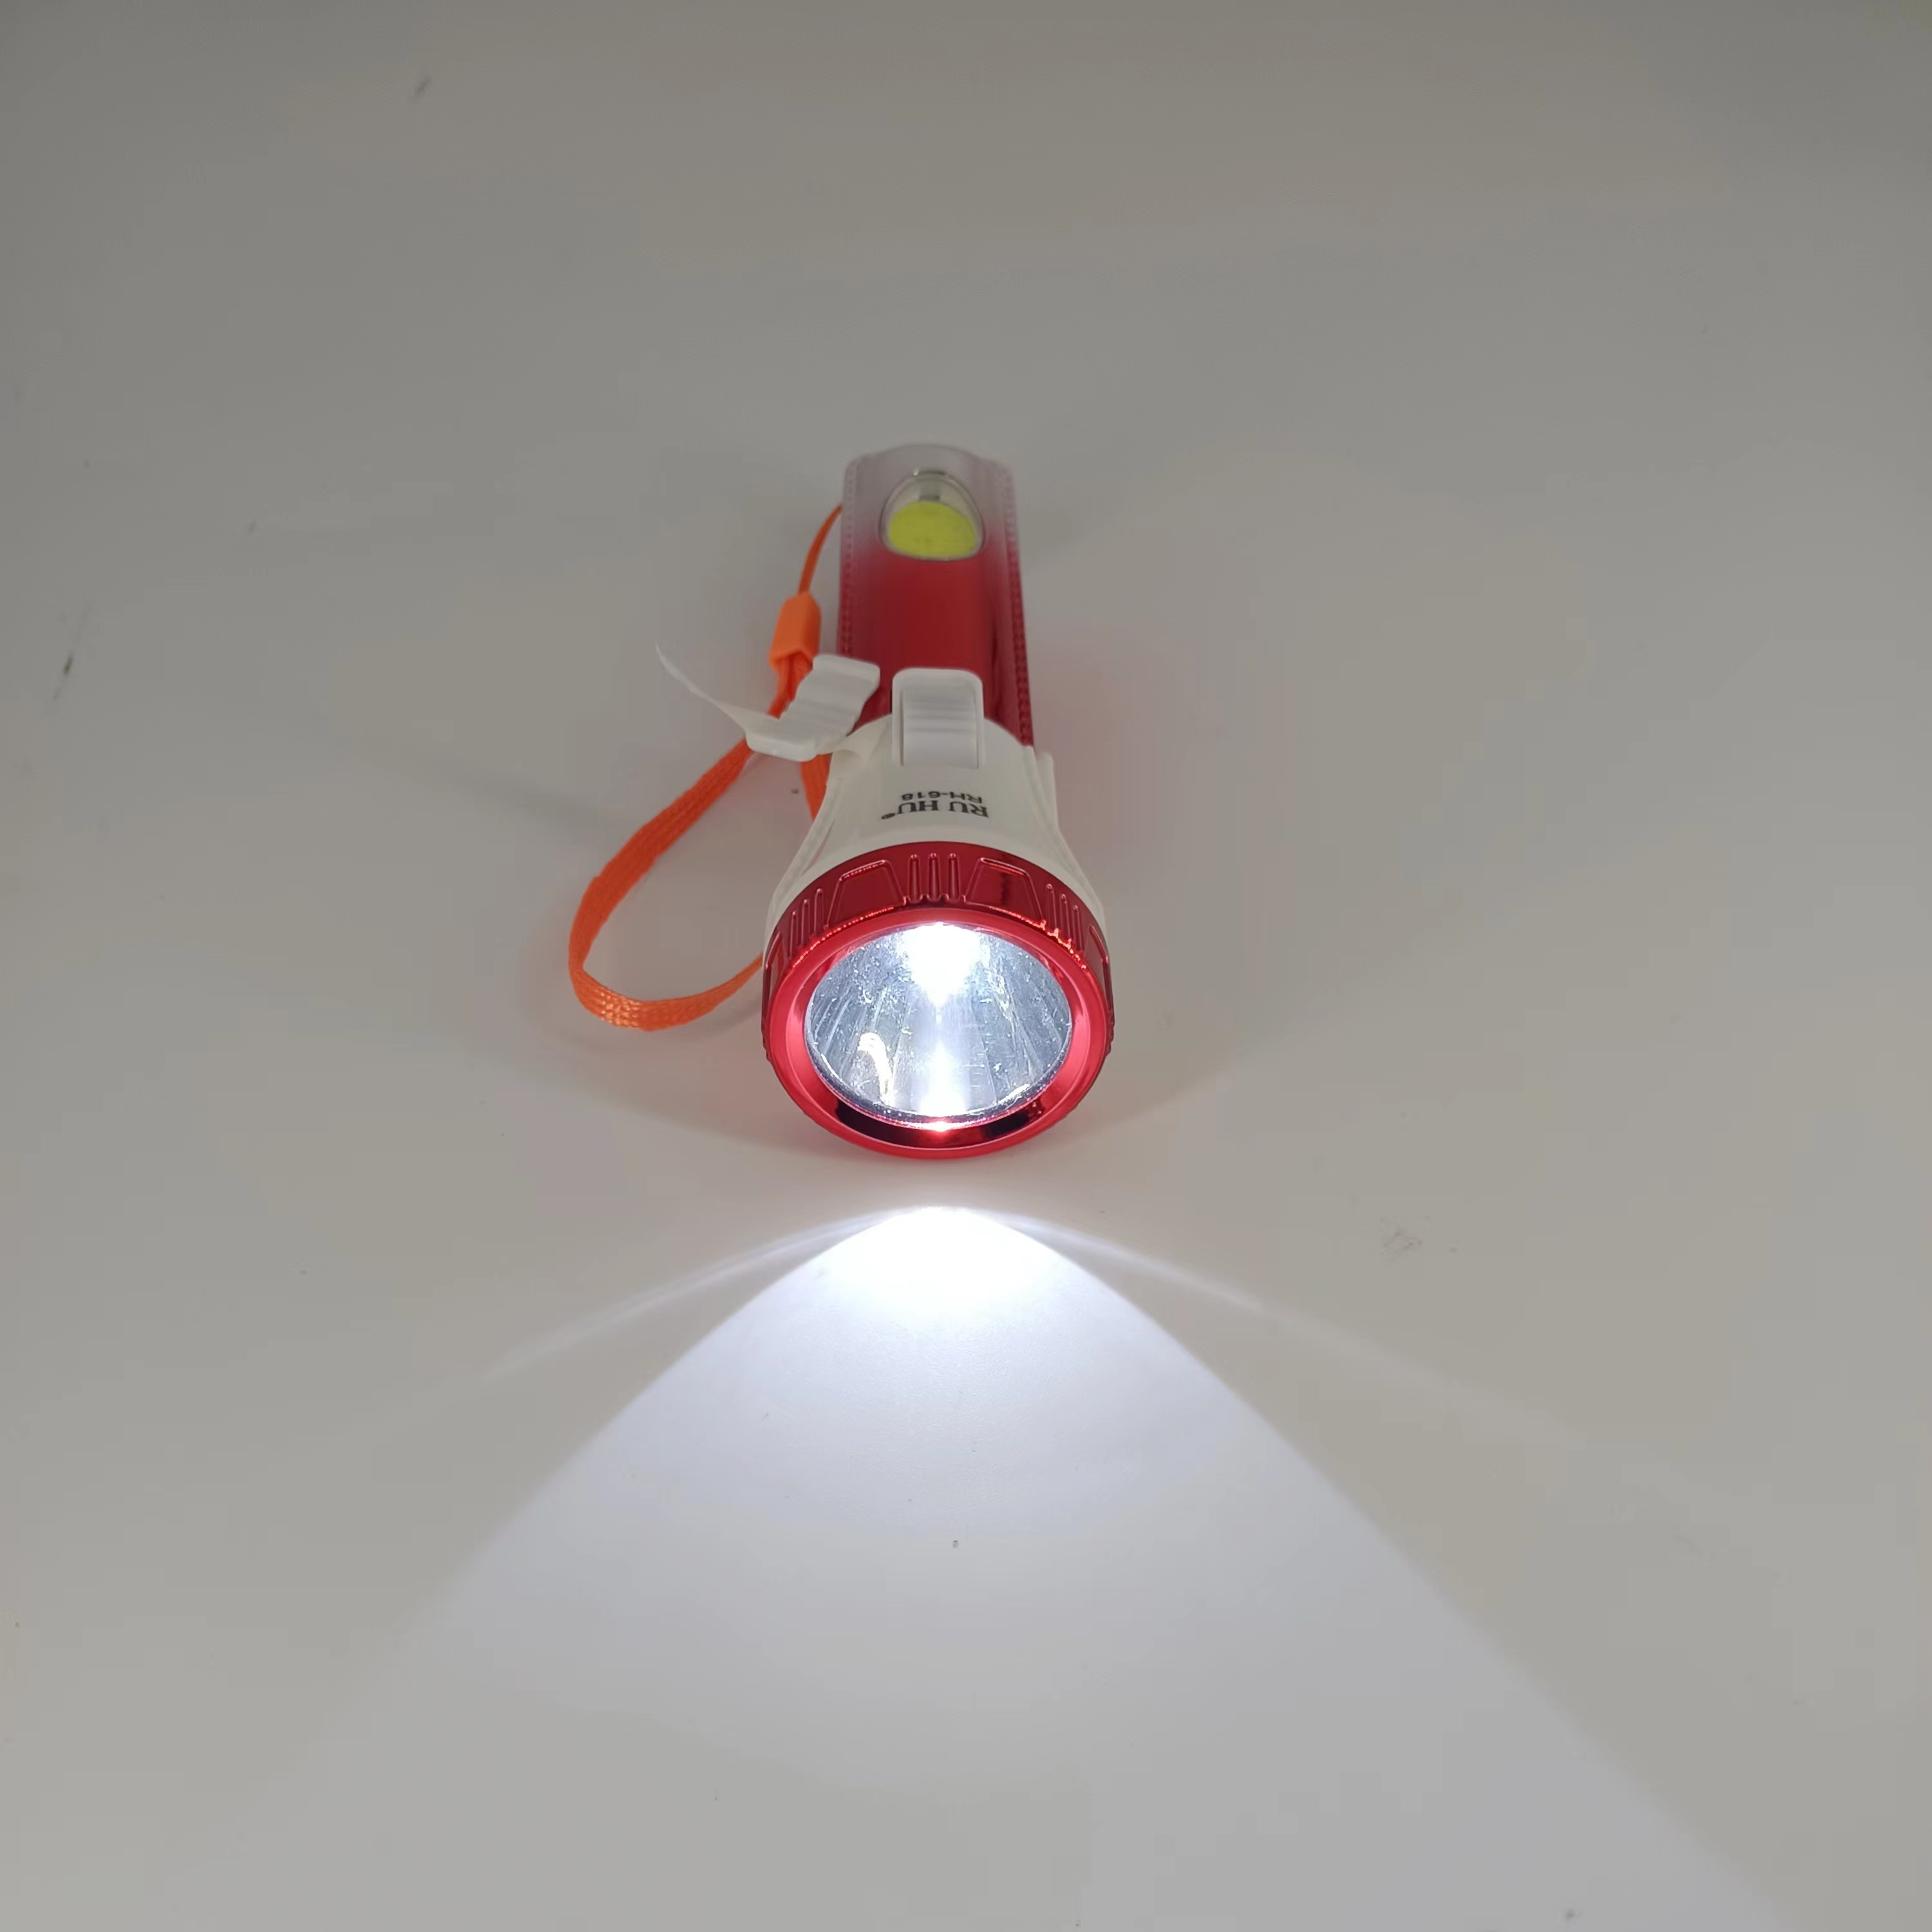 LED家用充电式手电筒 强光户外露营便携照明远射迷你小手电筒详情图4